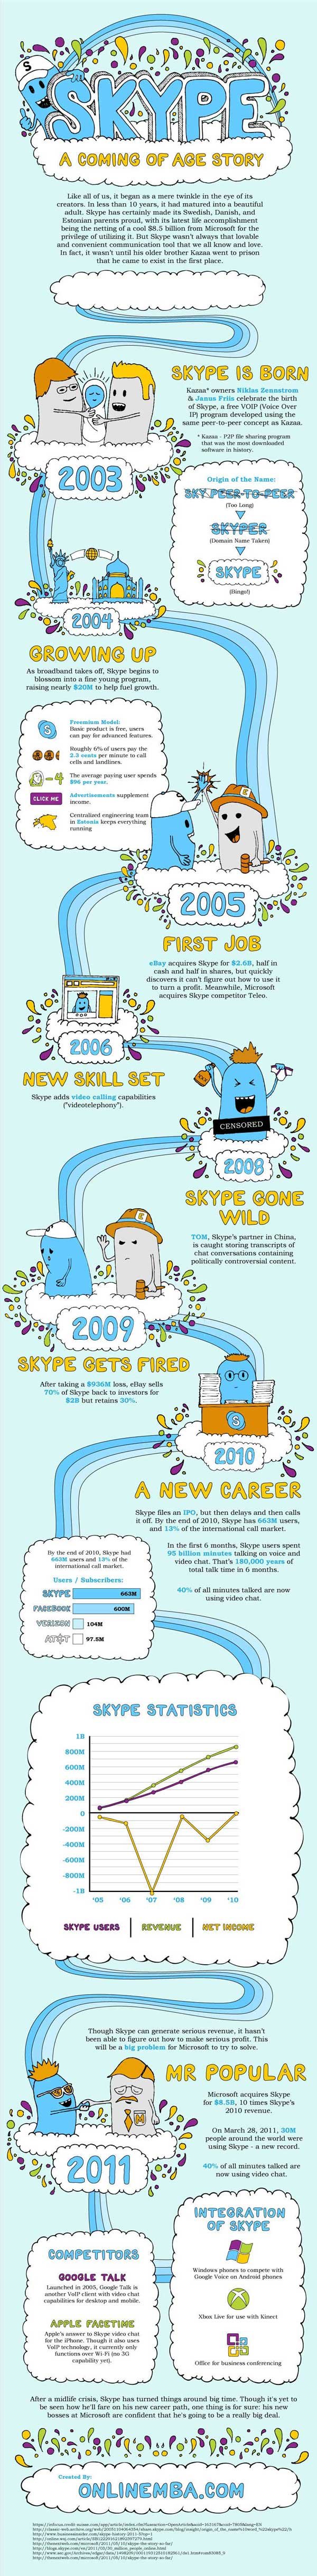 skype infographic